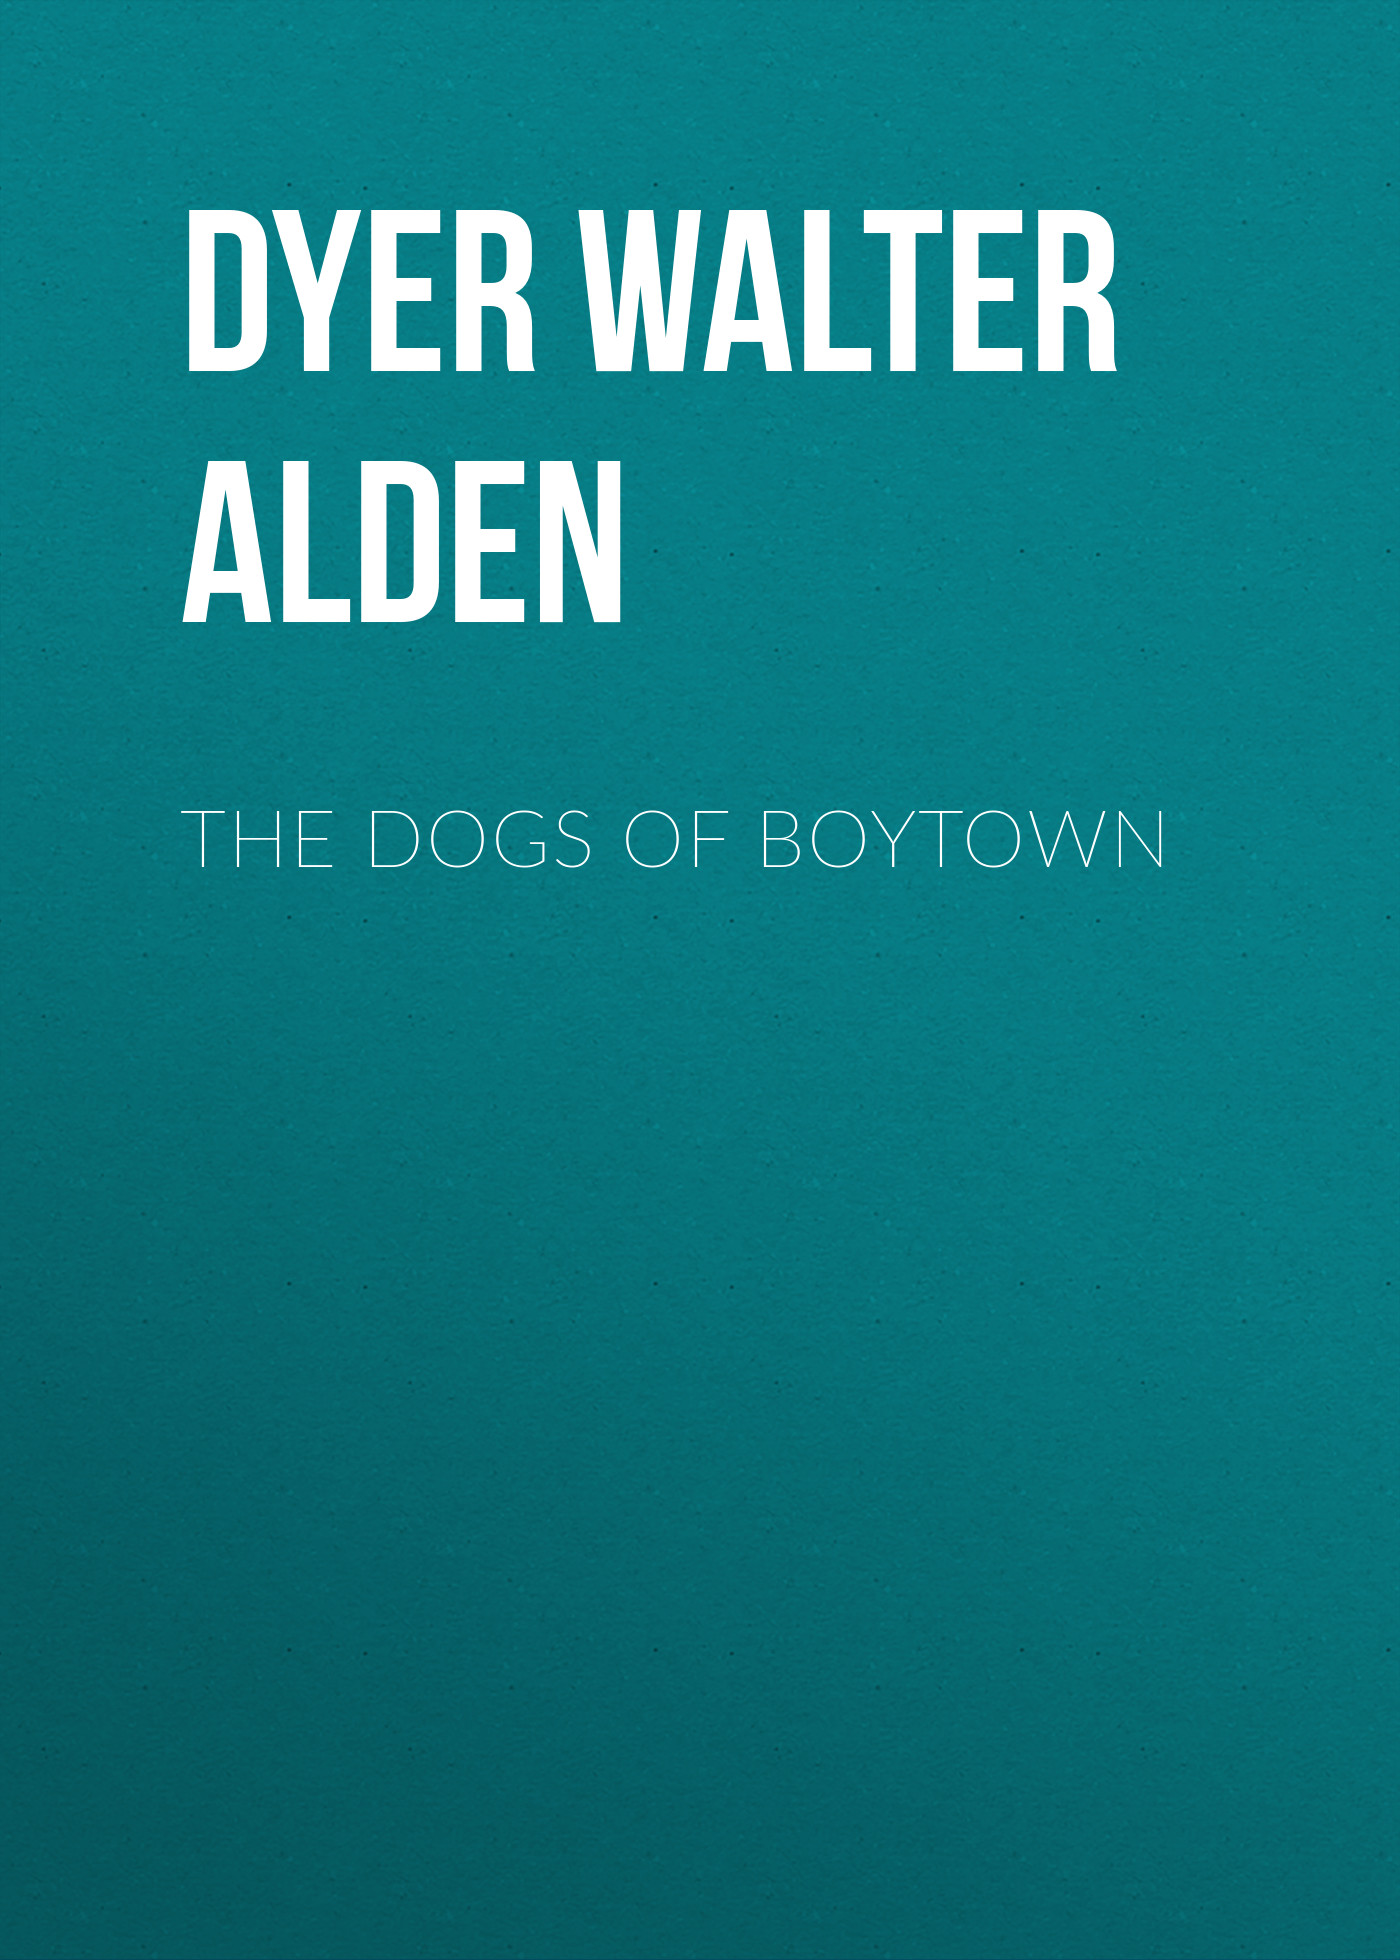 Книга The Dogs of Boytown из серии , созданная Walter Dyer, может относится к жанру Зарубежная старинная литература, Зарубежная классика, Биографии и Мемуары. Стоимость электронной книги The Dogs of Boytown с идентификатором 24620477 составляет 0 руб.